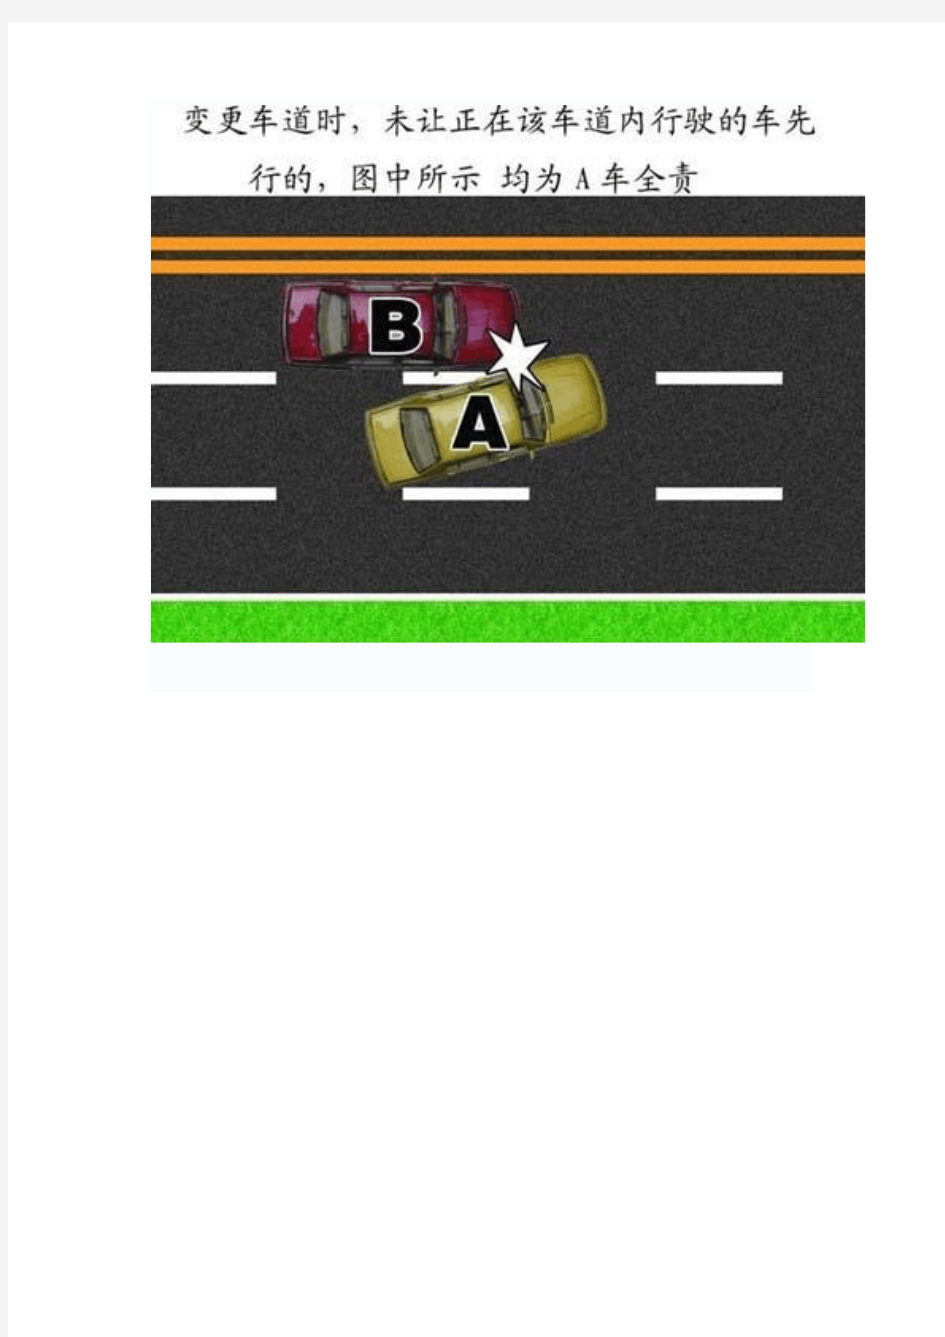 交通事故图片+-+交通事故责任认定详细图解